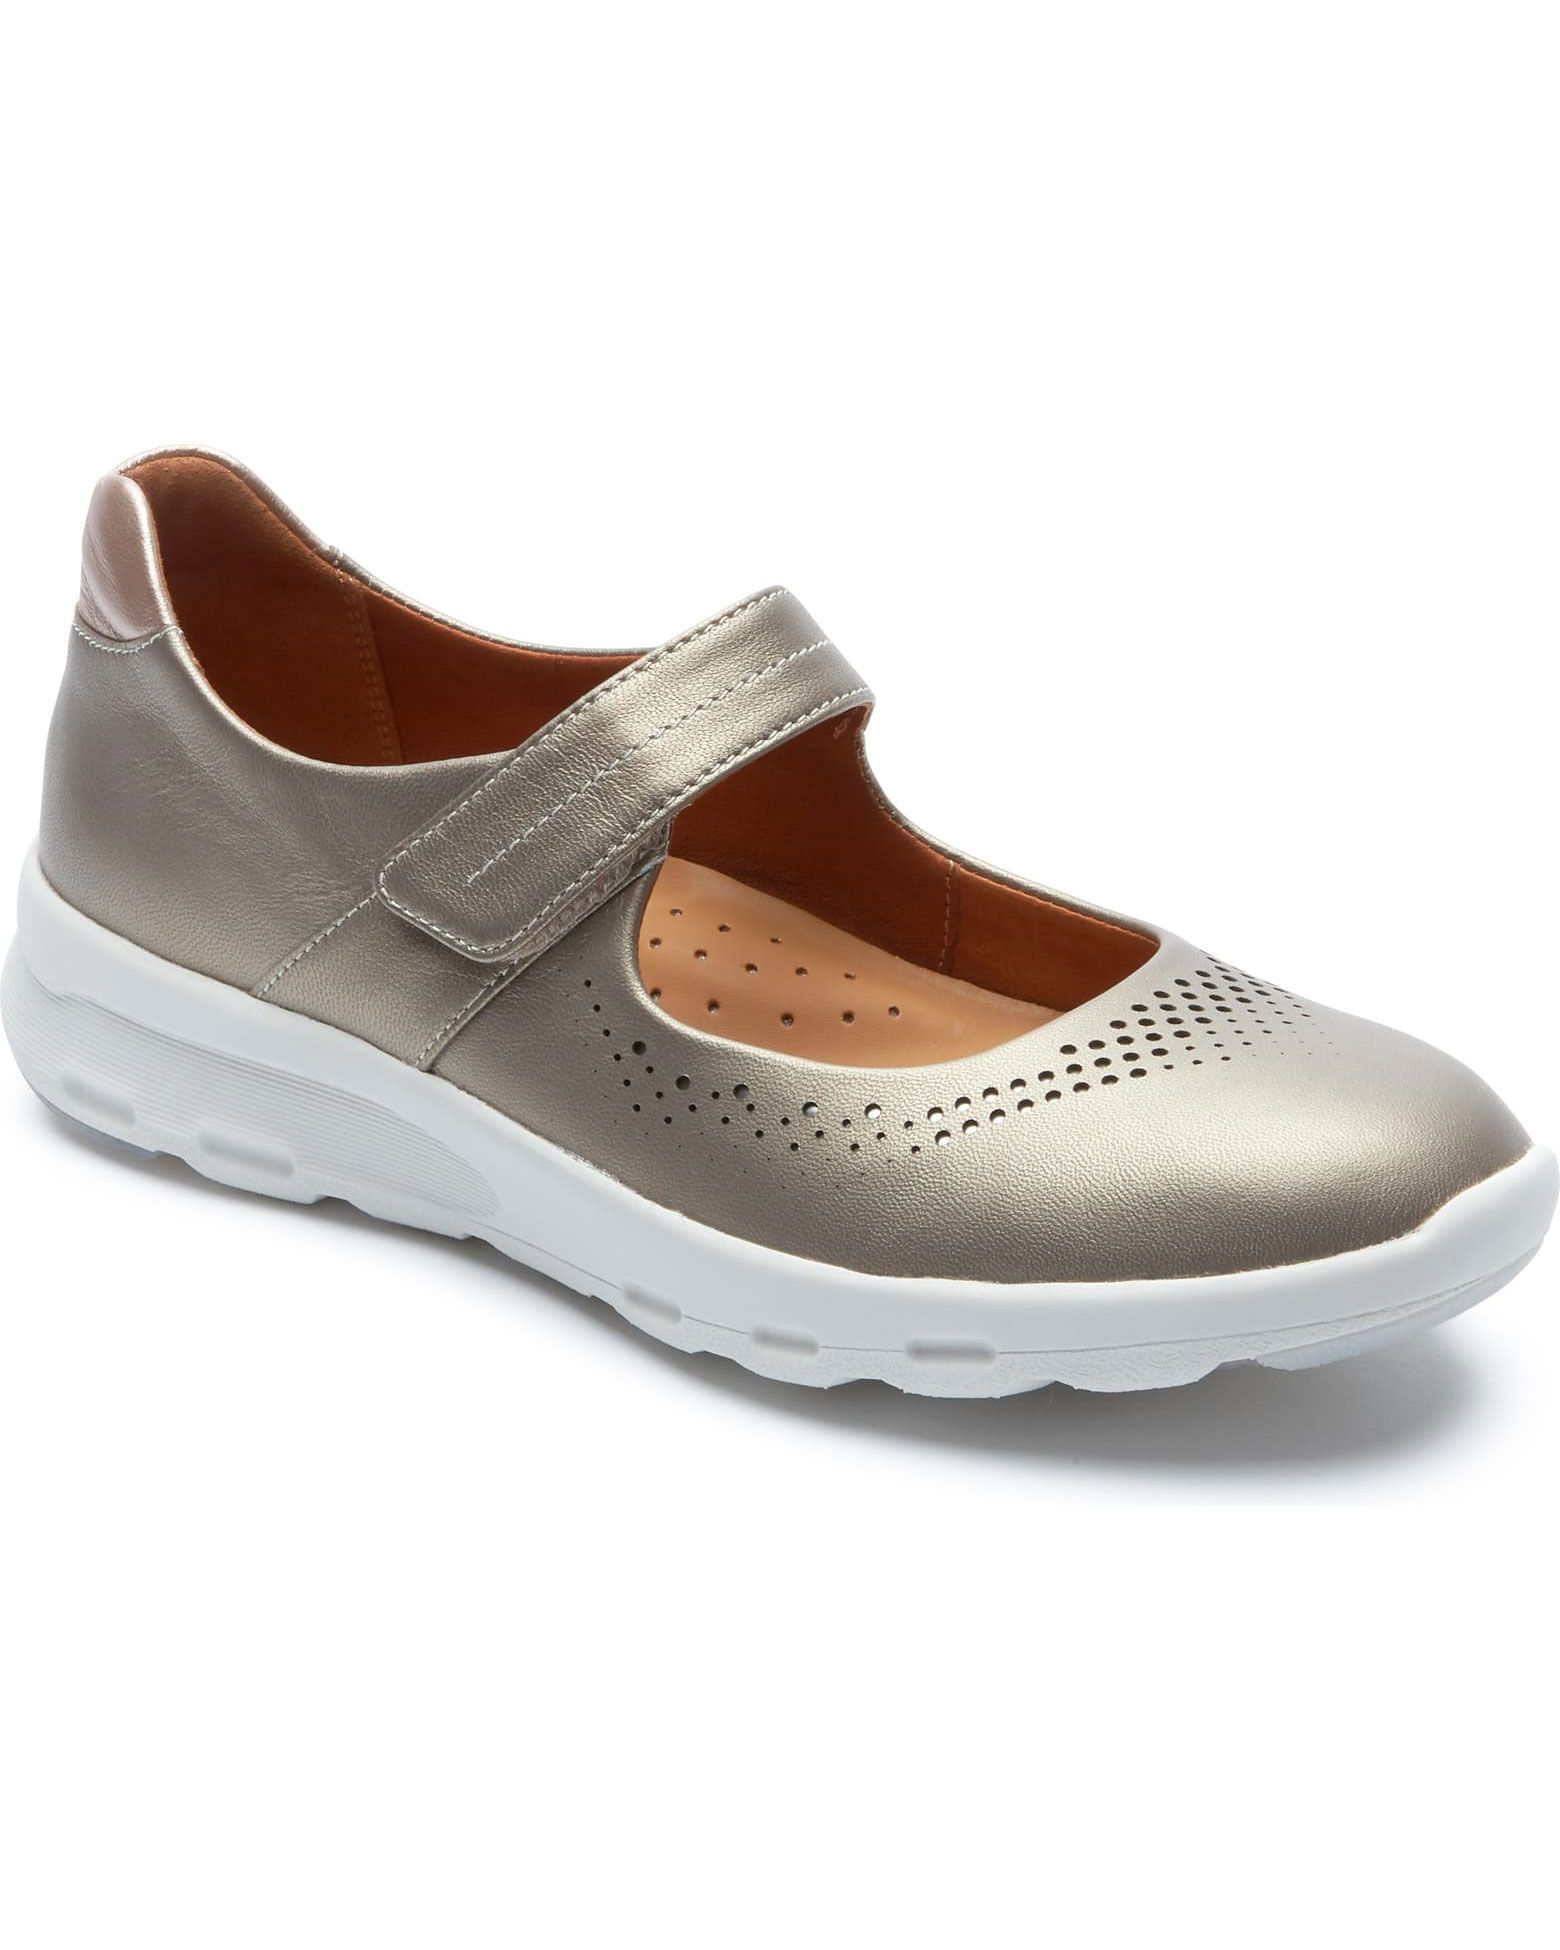 נעל הליכה רוקפורט מרי ג'יין: נעלי ההליכה הטובות ביותר לנשים